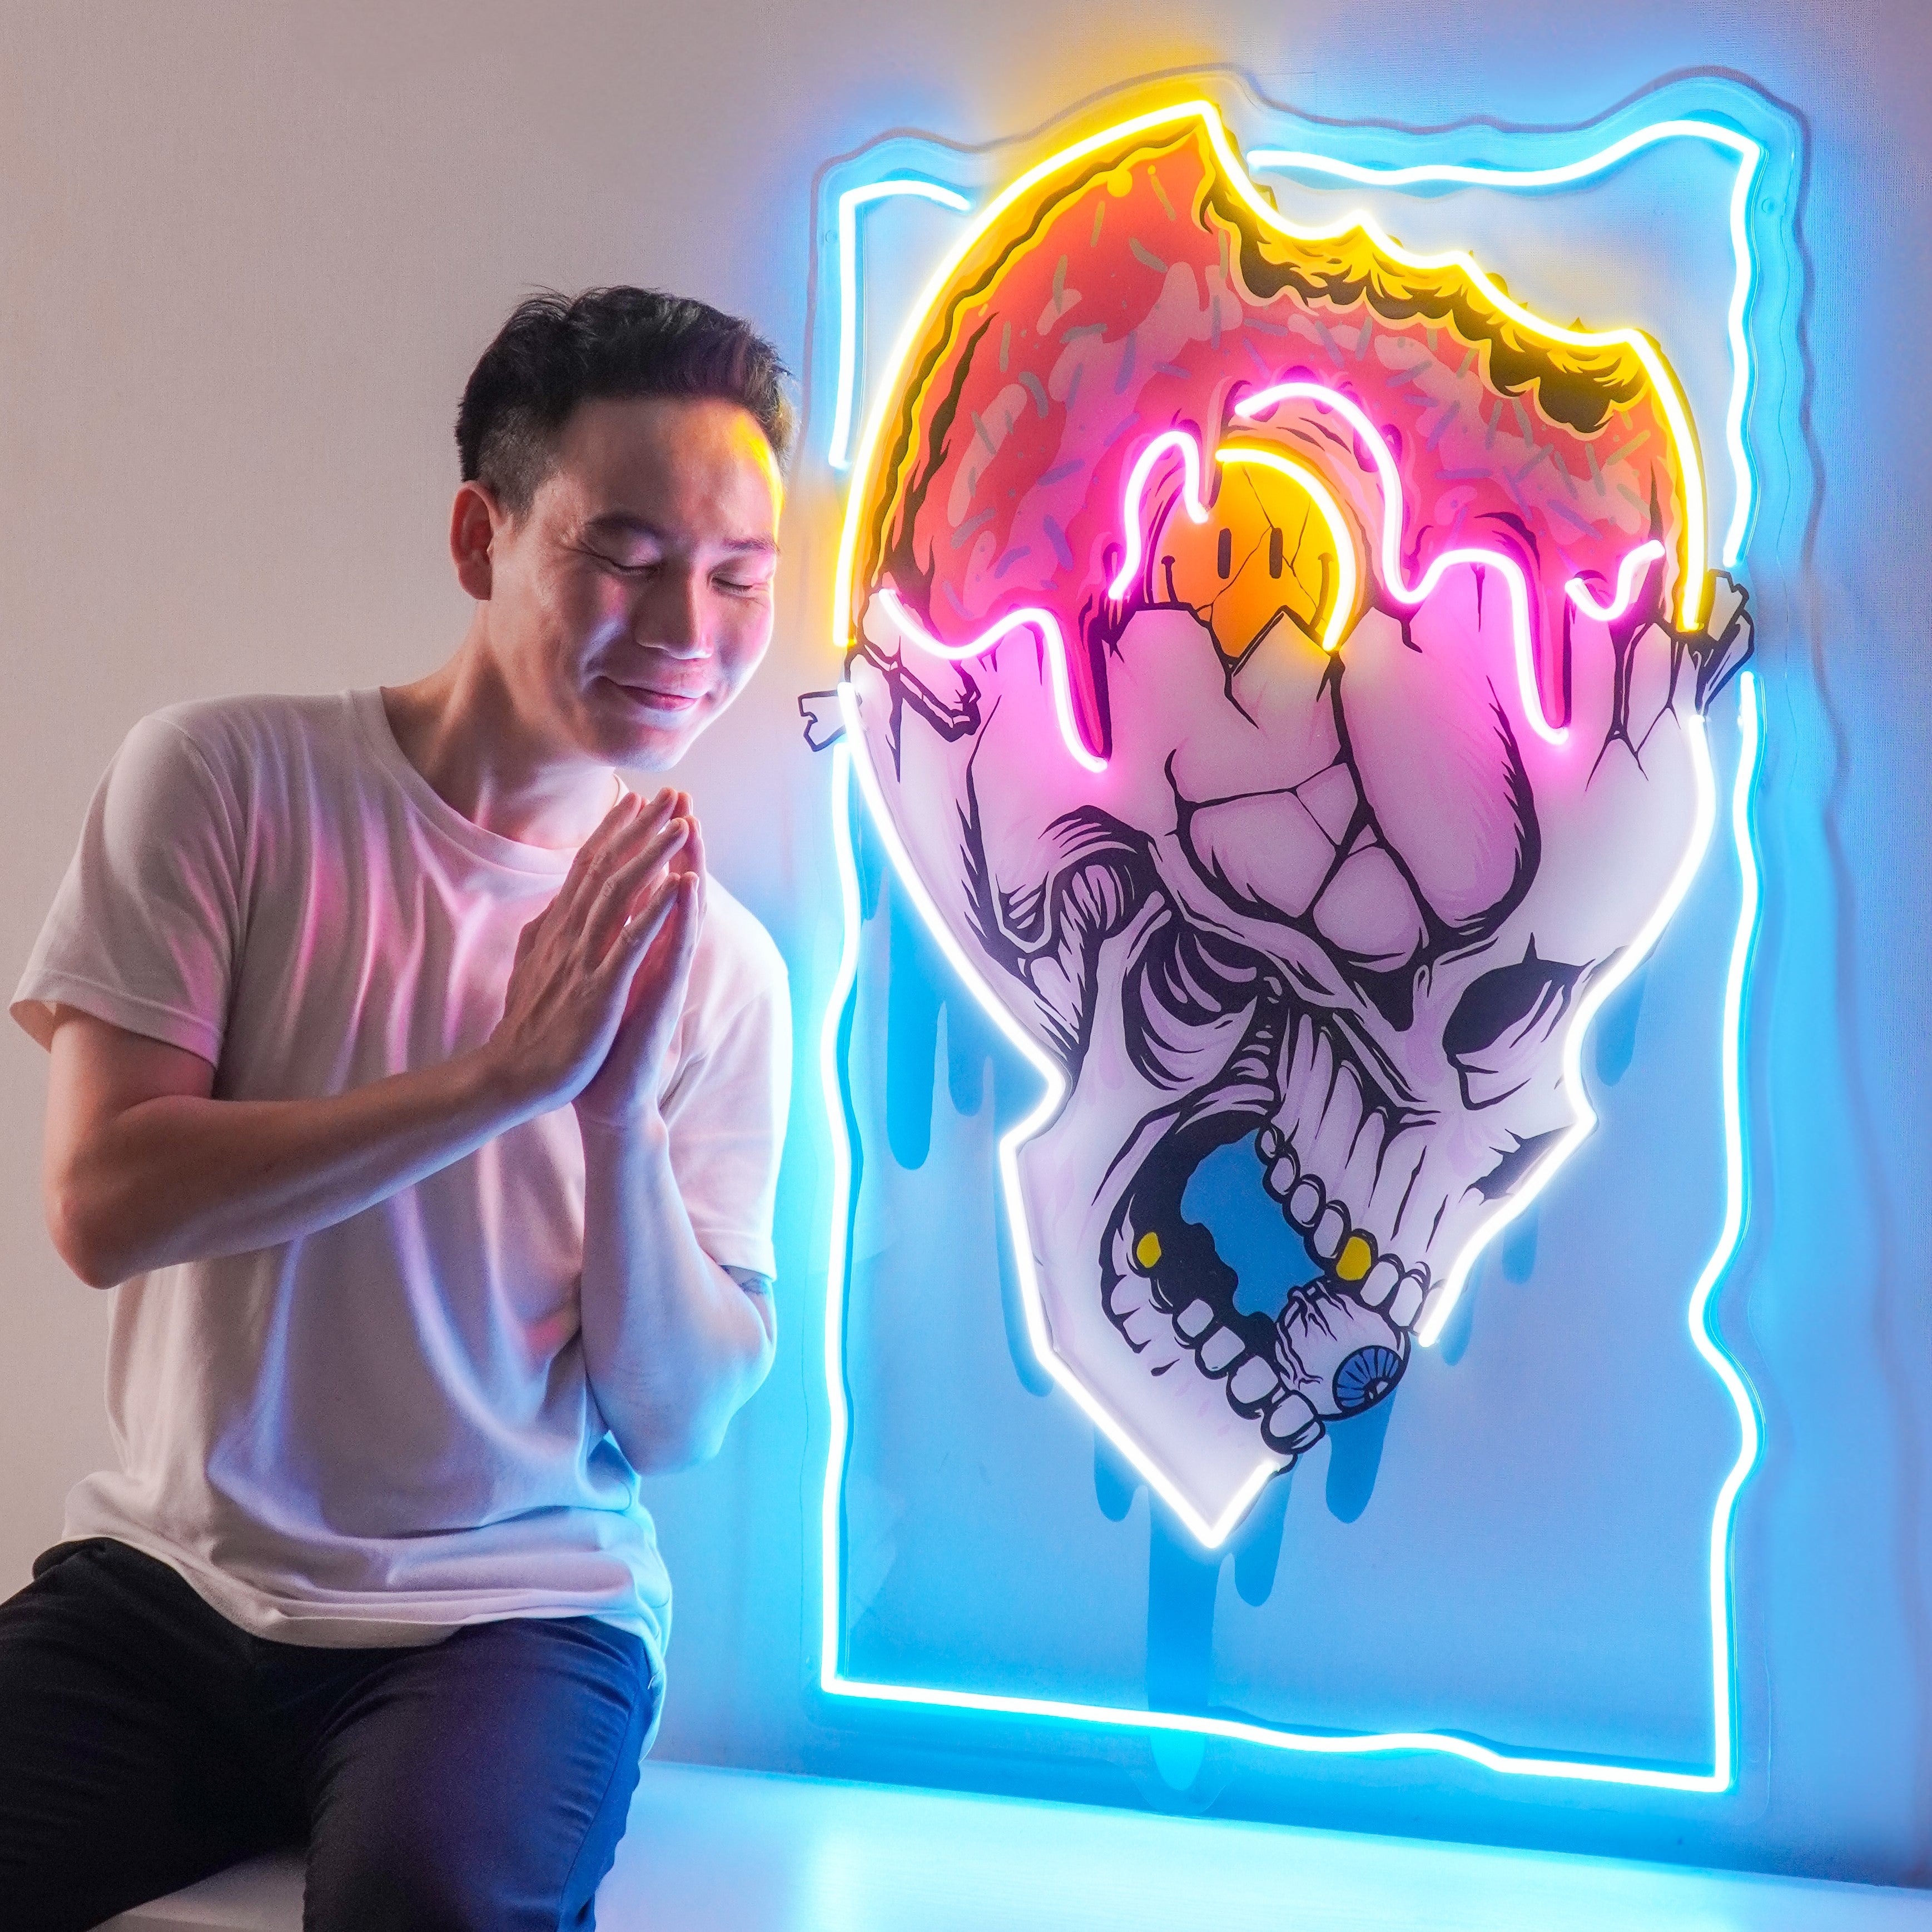 Feeling Skull LED Neon Sign Light Pop Art